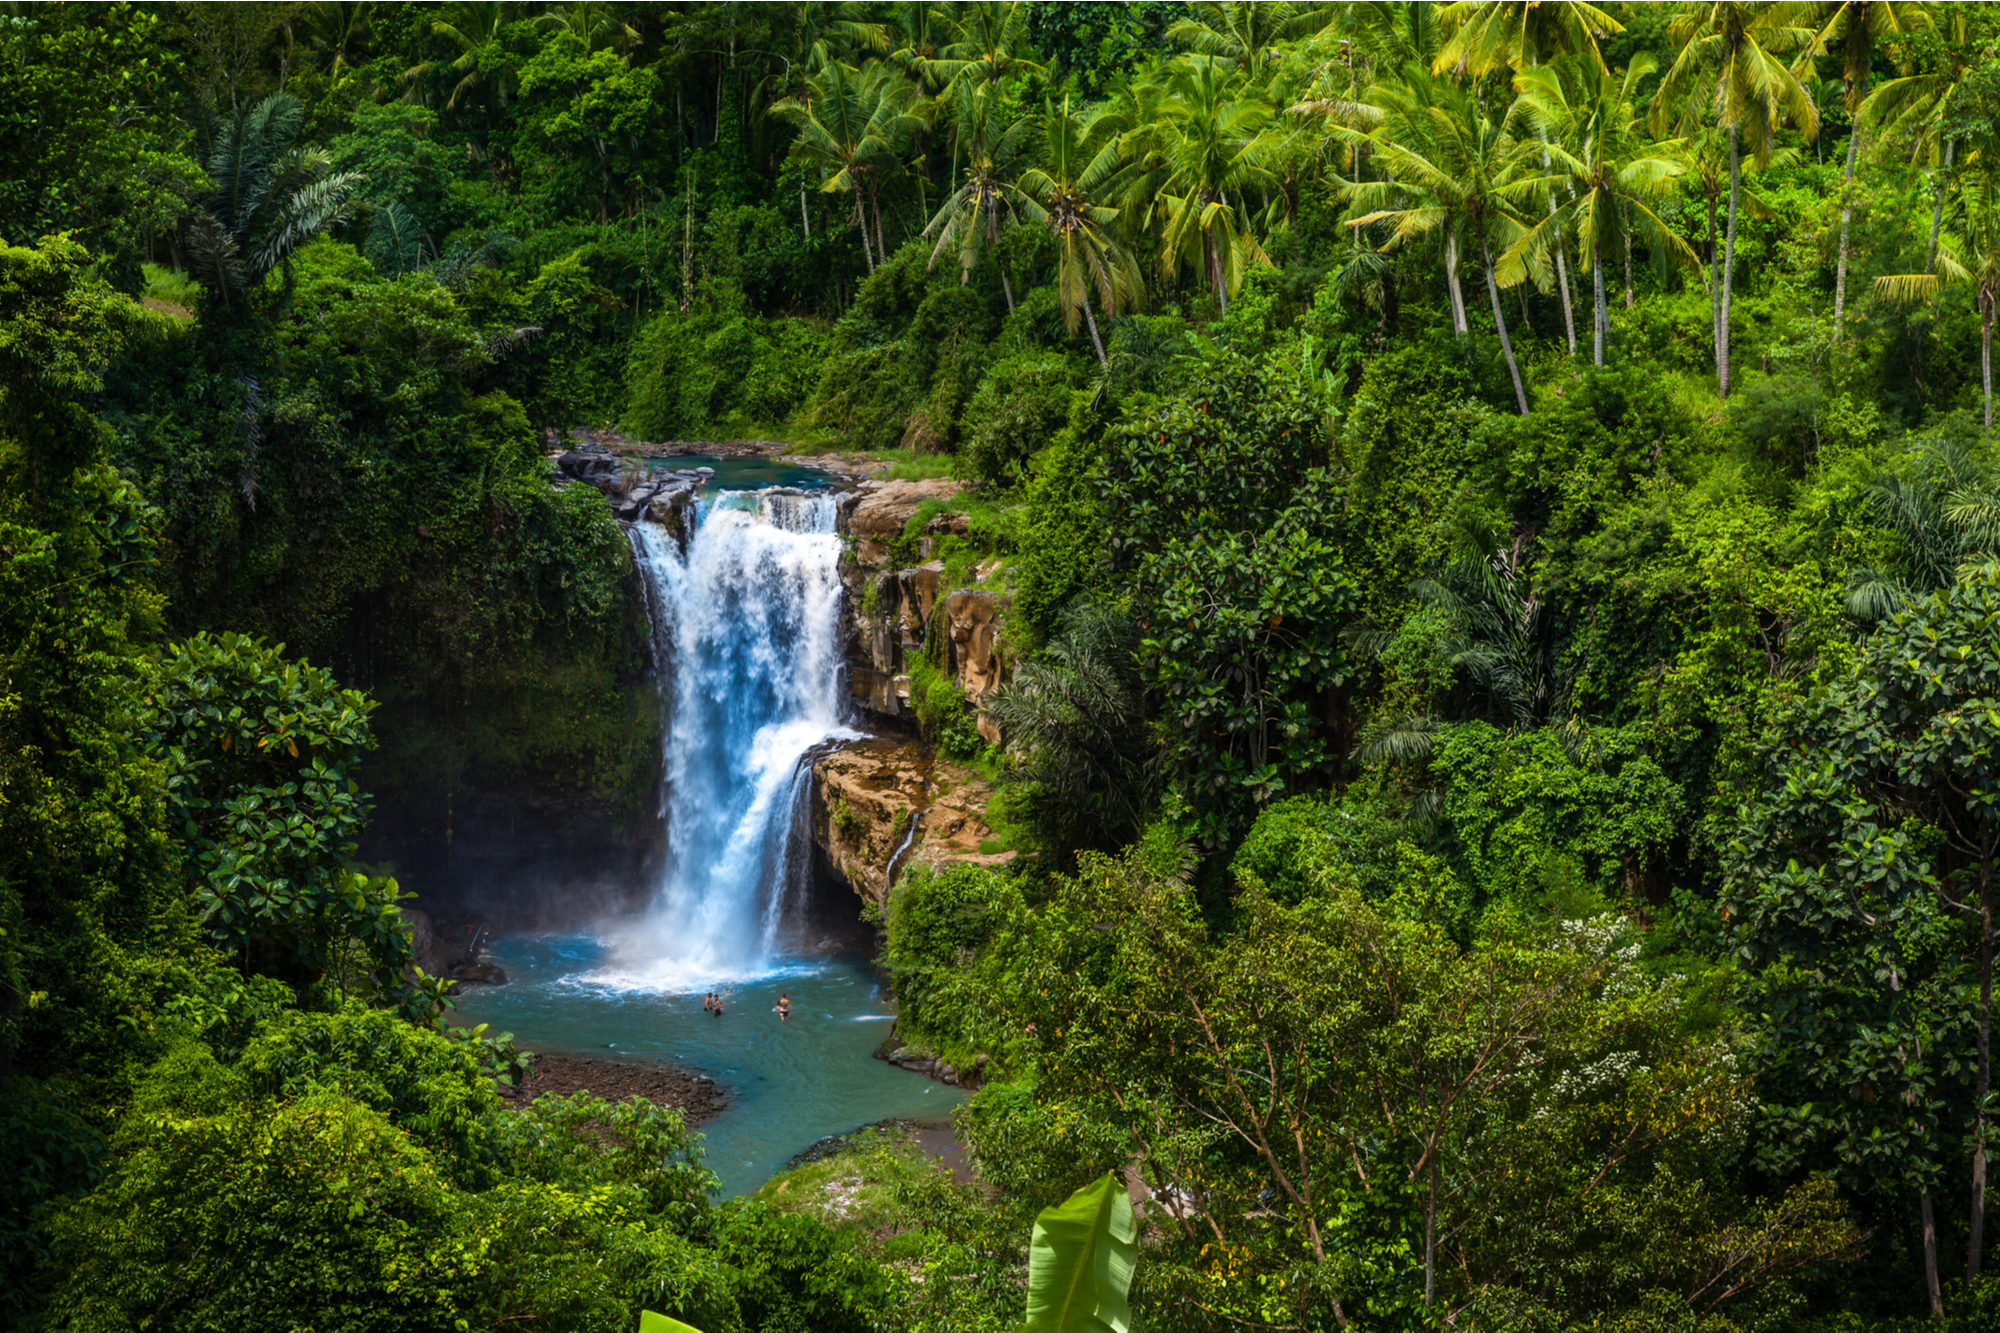 Bali’s Most Beautiful Waterfalls & Rice Fields